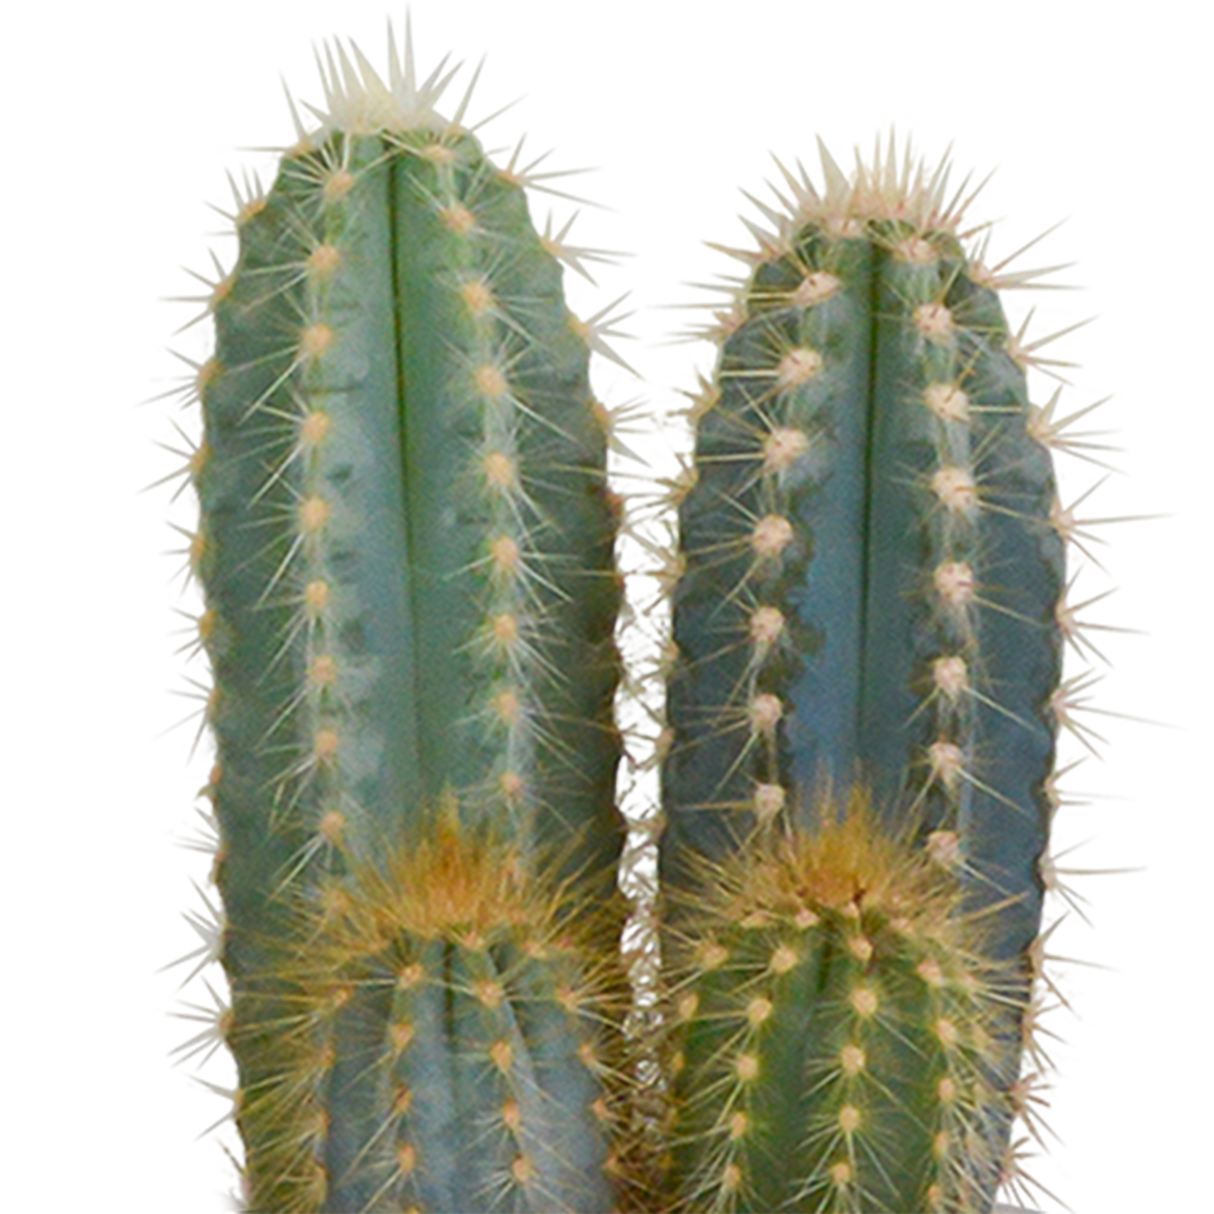 Caja de cactus y sus maceteros blancos - Juego de 3 plantas, h18cm